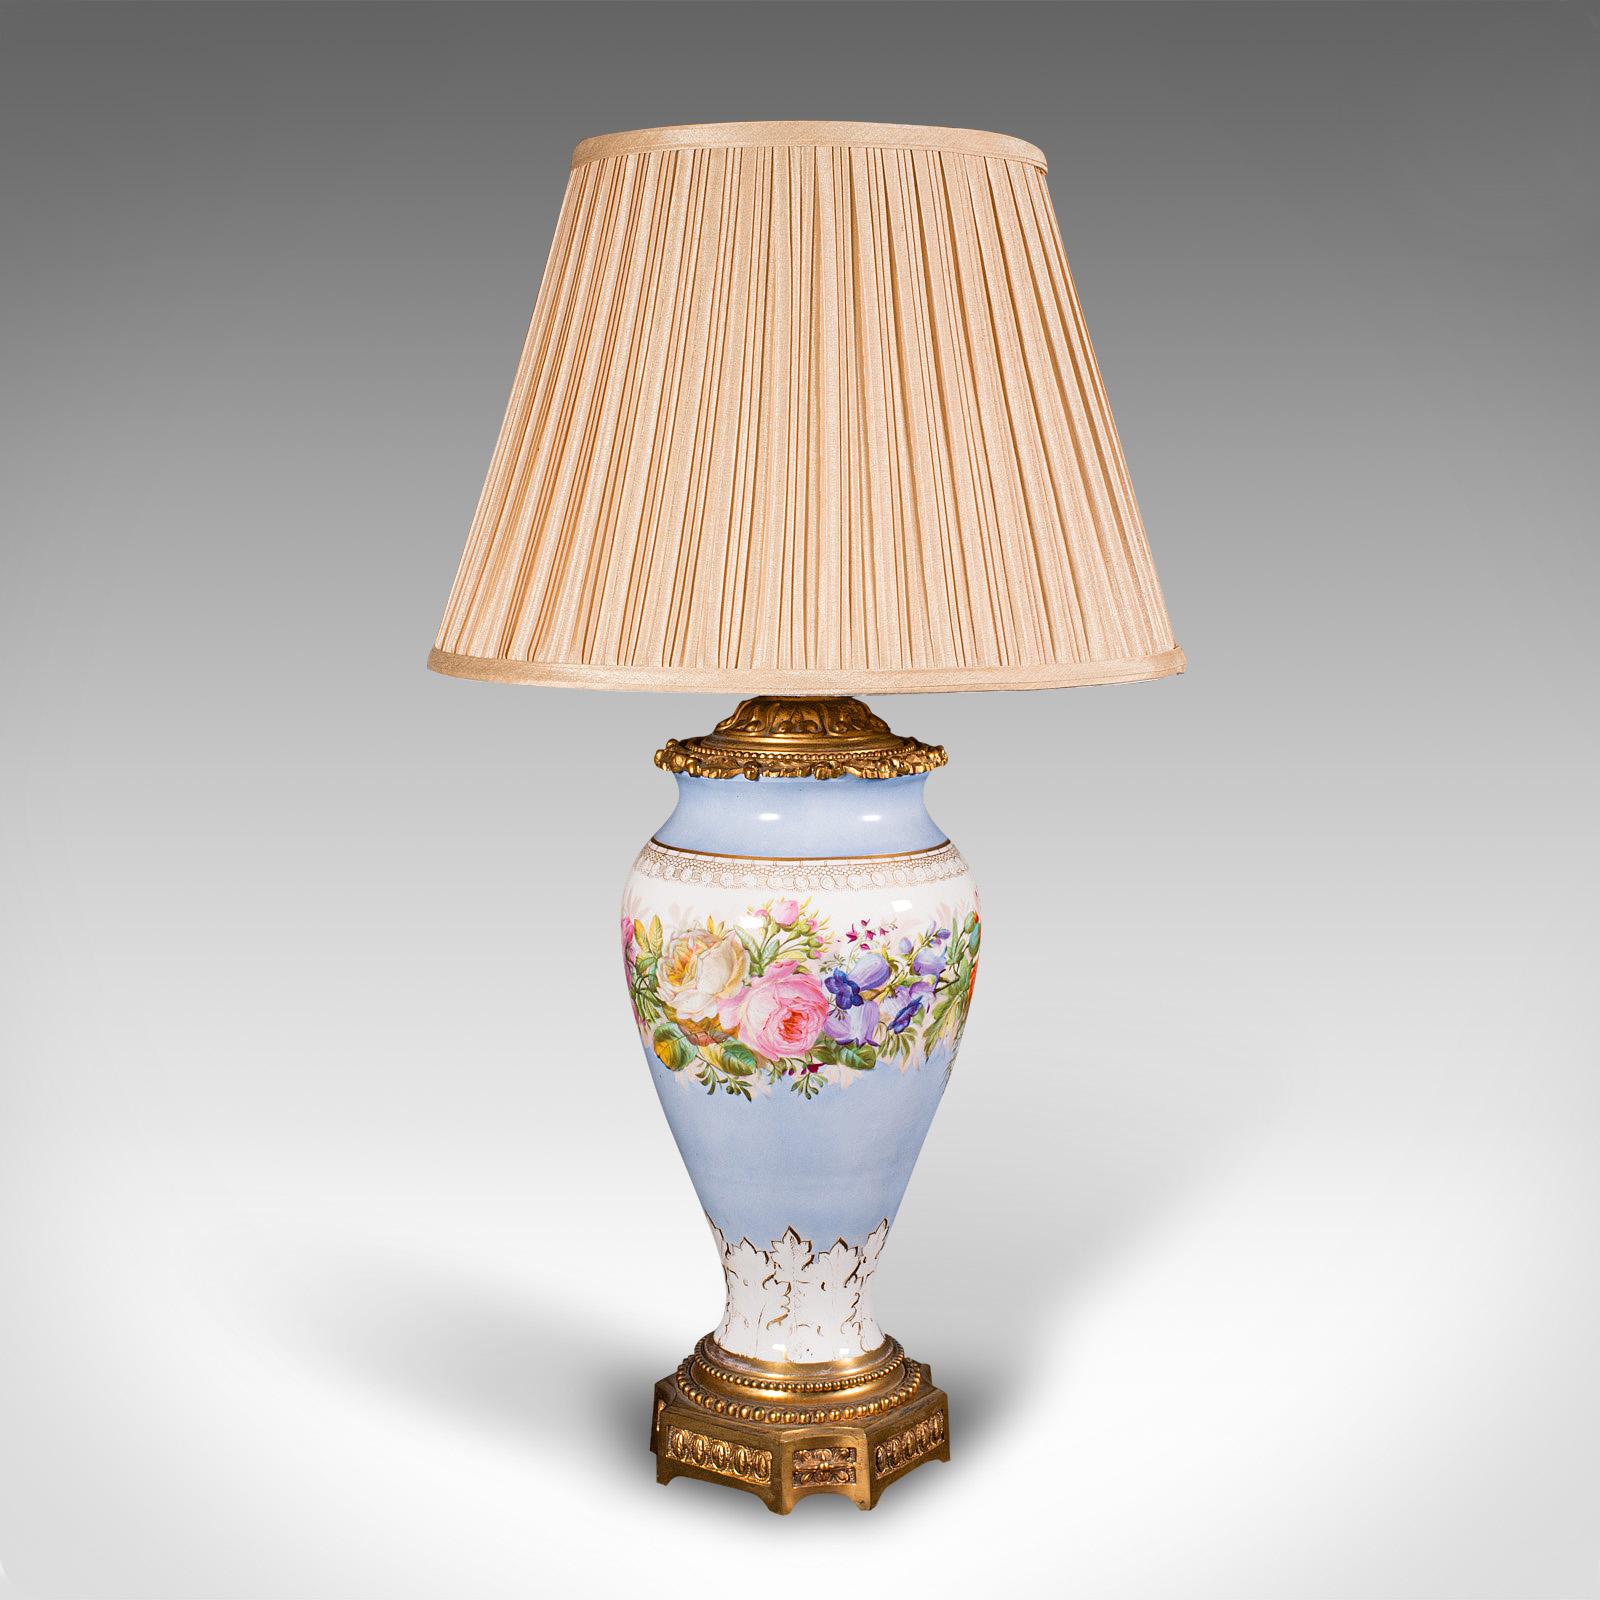 
Il s'agit d'une lampe de café vintage. Lampe de table décorative française, en céramique et métal moulé doré, datant du début du 20e siècle, vers 1930.

Belle lampe de table à l'aspect feuillu et coloré
Présente une patine d'usage désirable et est